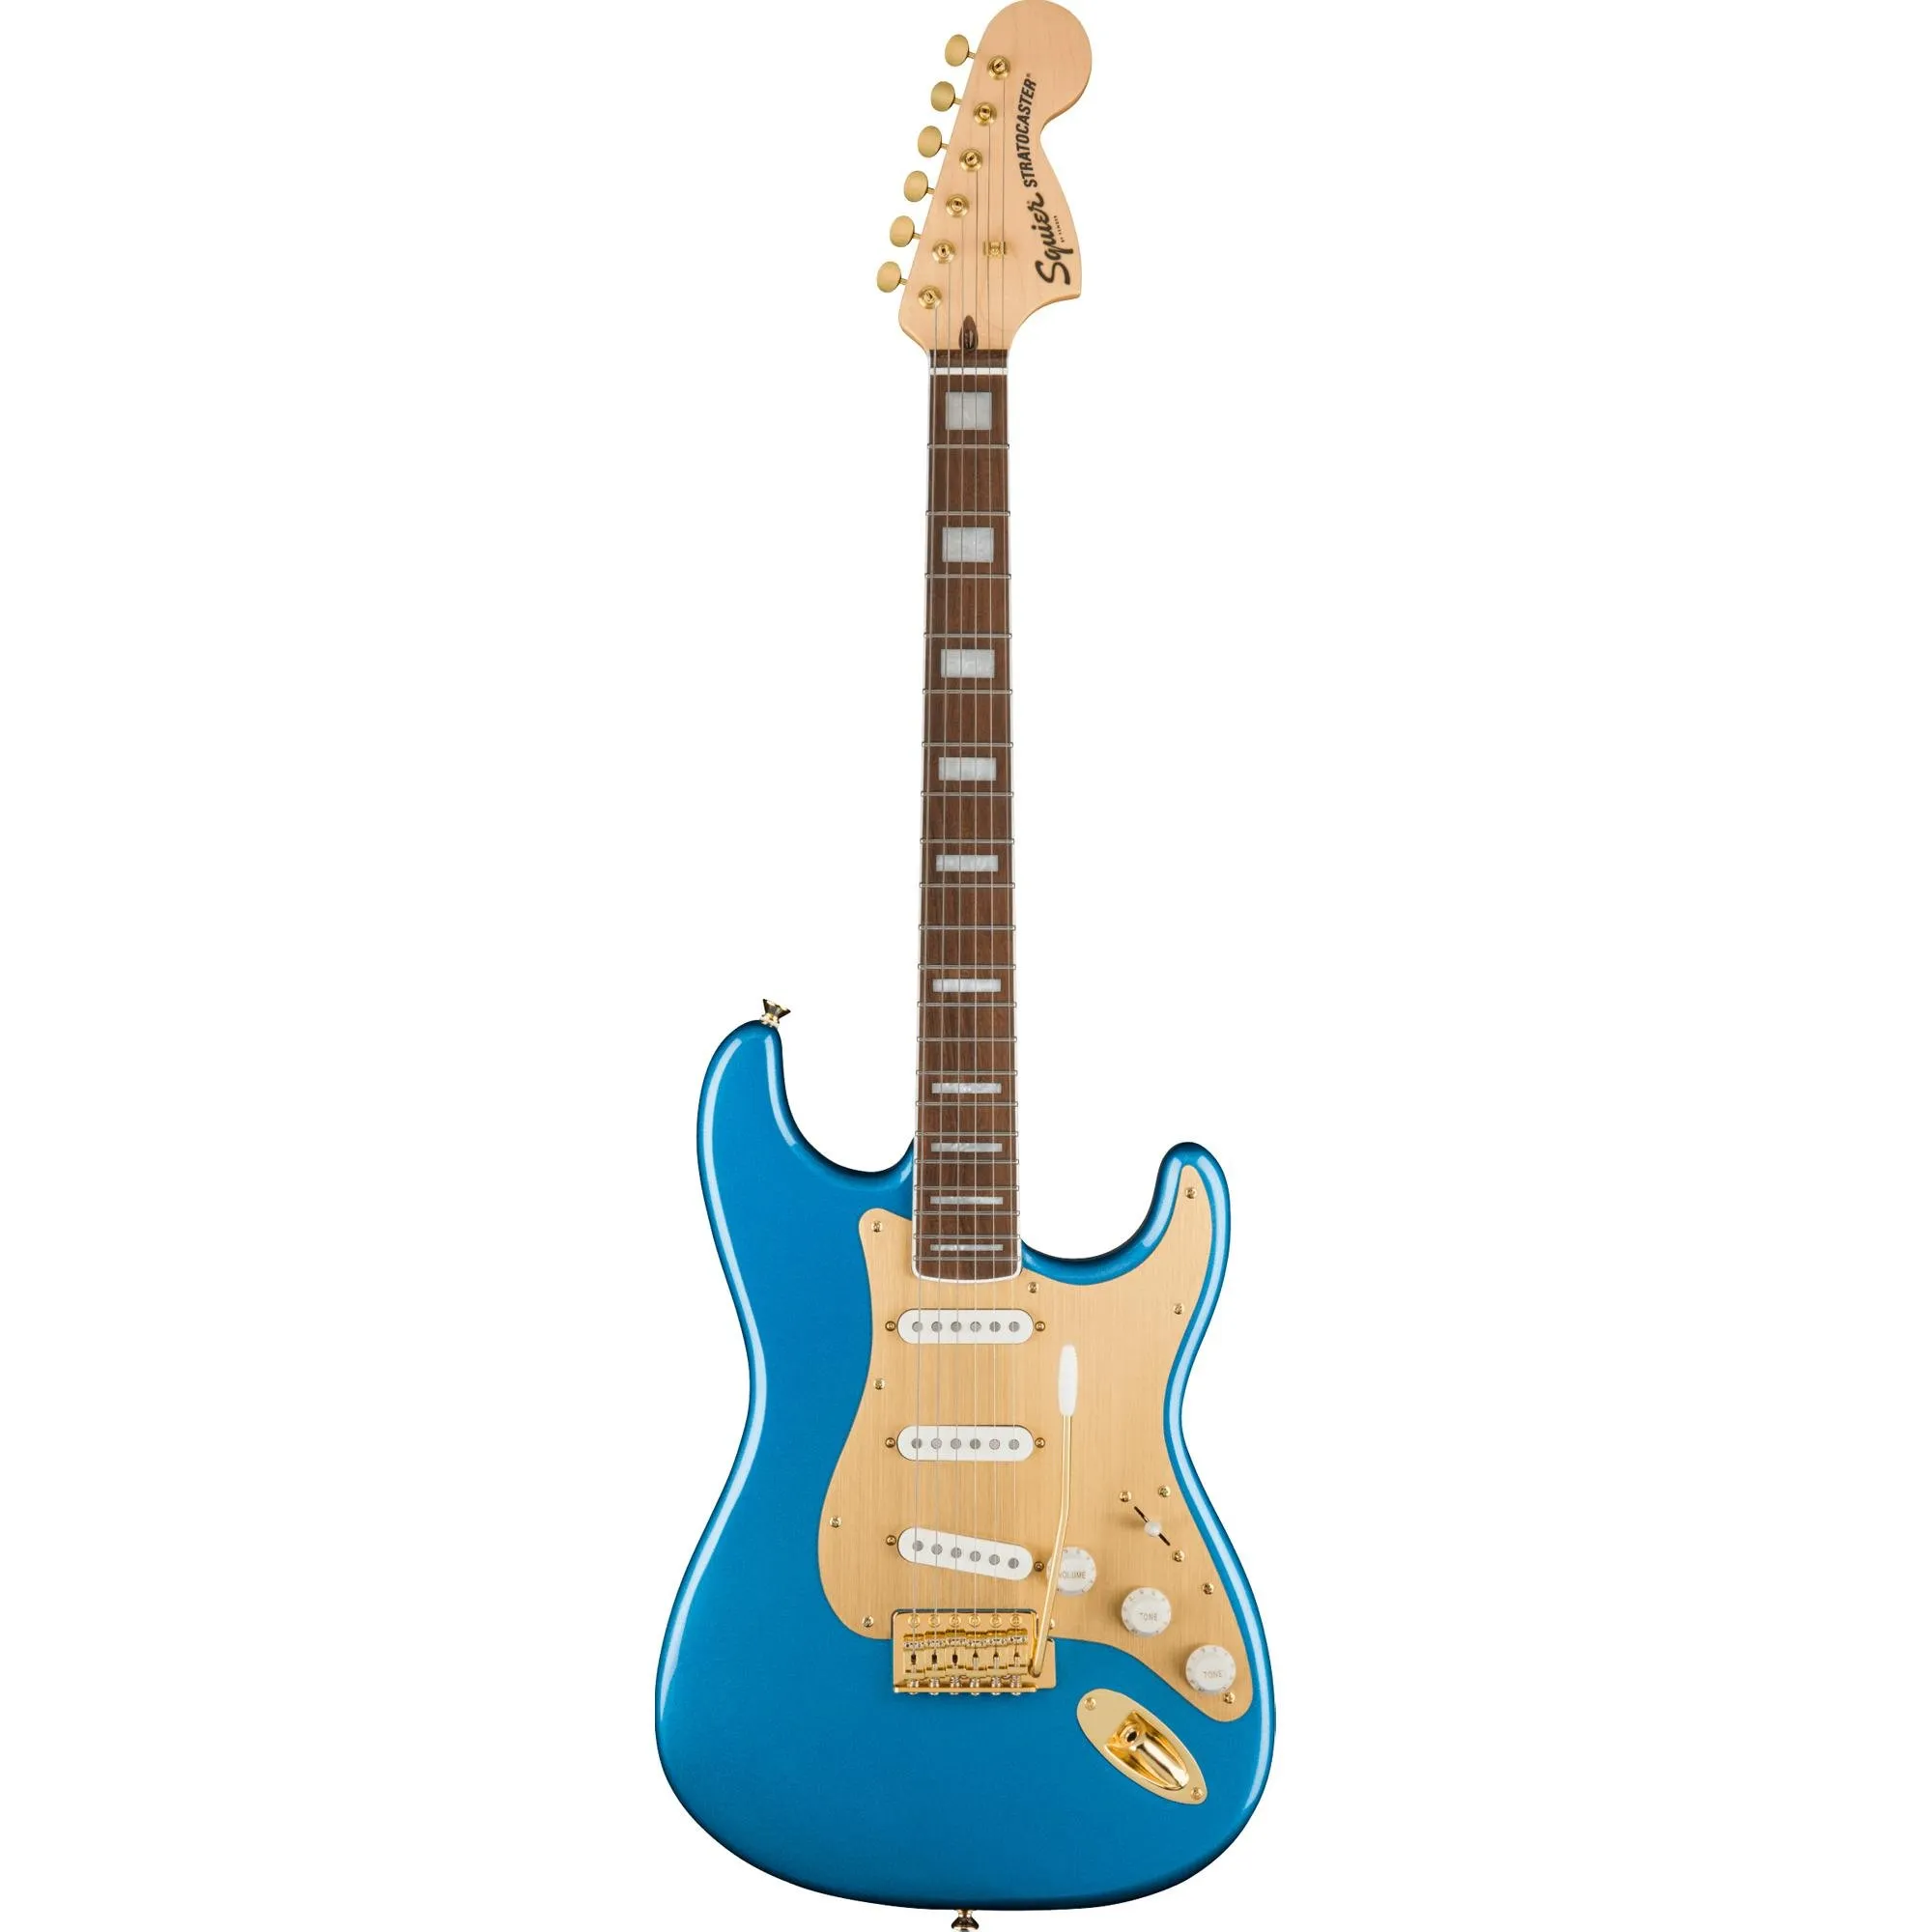 Guitarra Squier 40TH Anniversary Stratocaster Gold Edition Lake Placid por 6.411,99 à vista no boleto/pix ou parcele em até 12x sem juros. Compre na loja Mundomax!